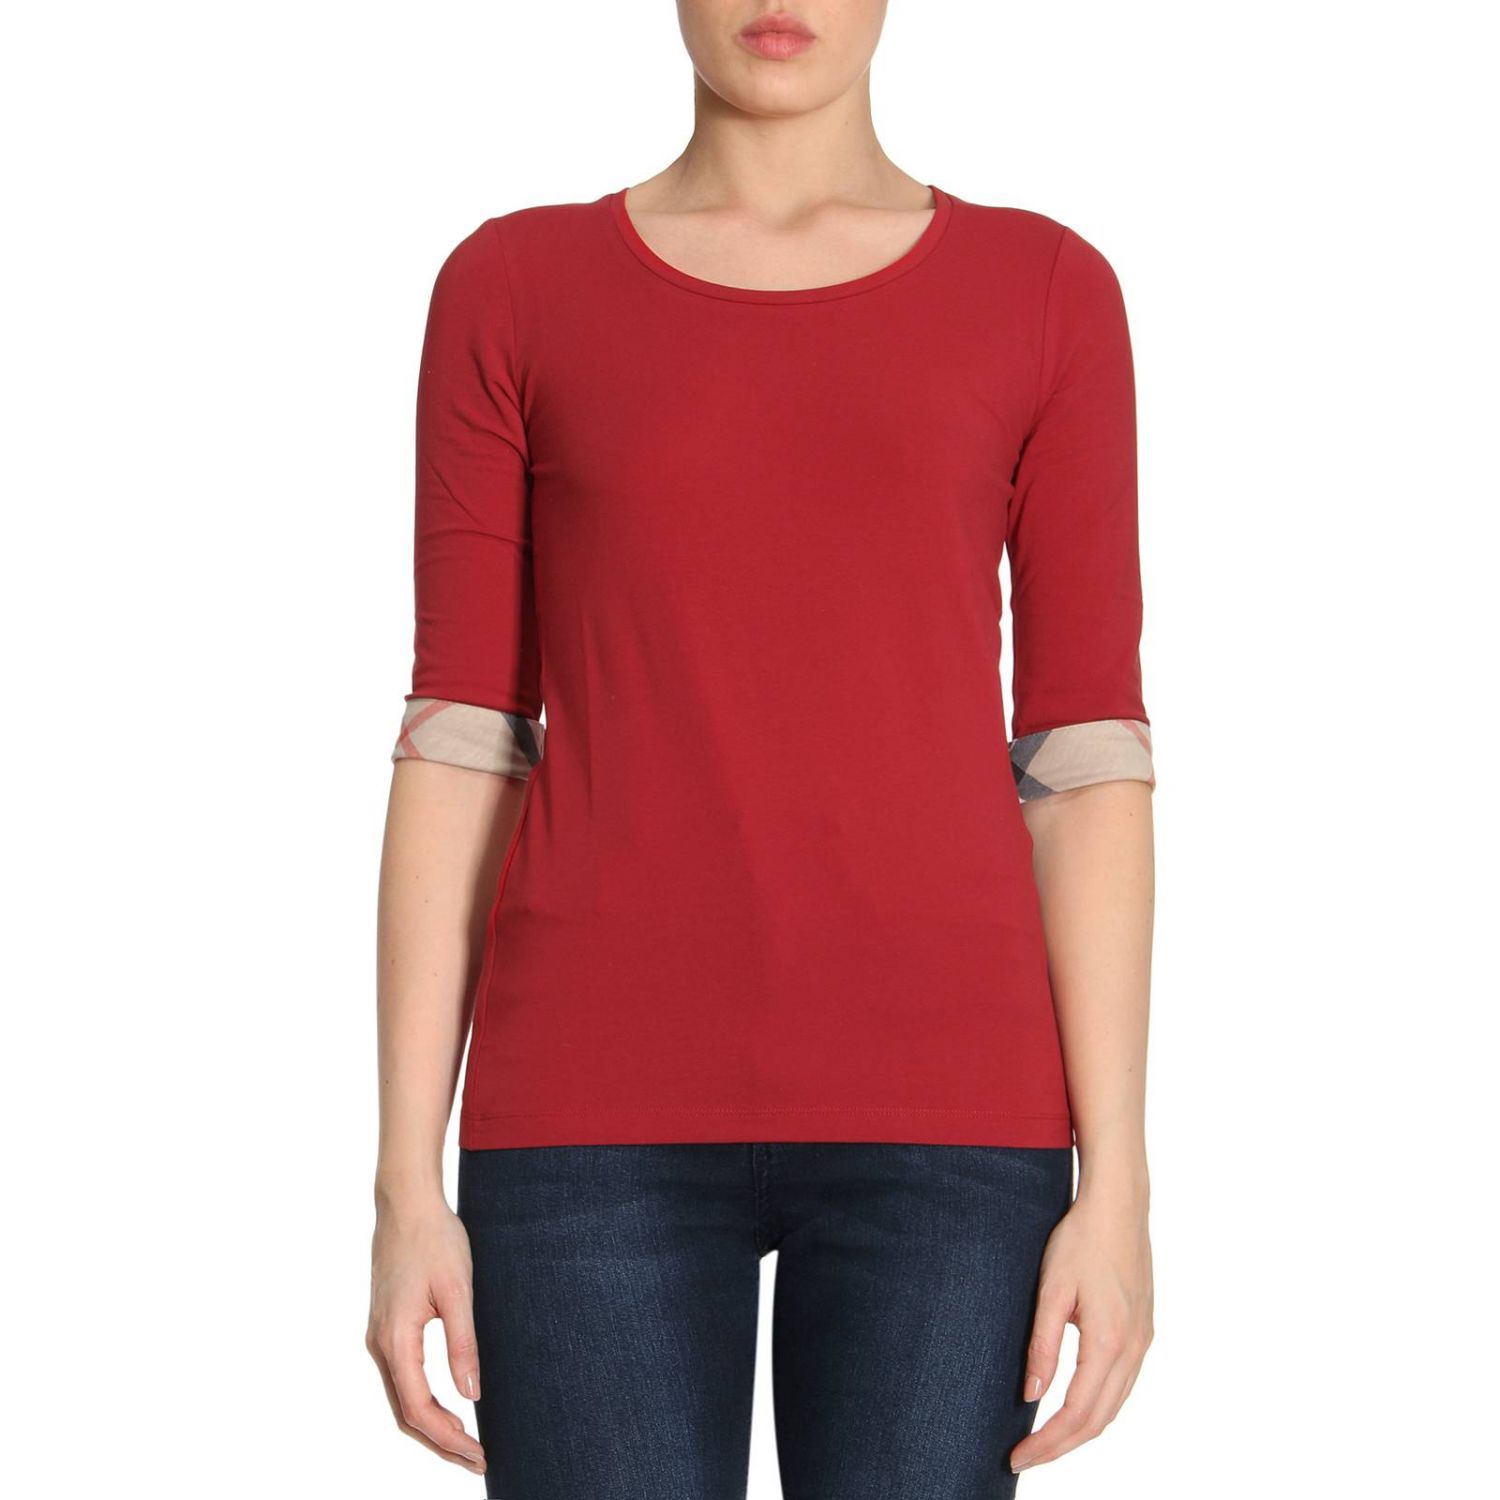 red burberry shirt women's